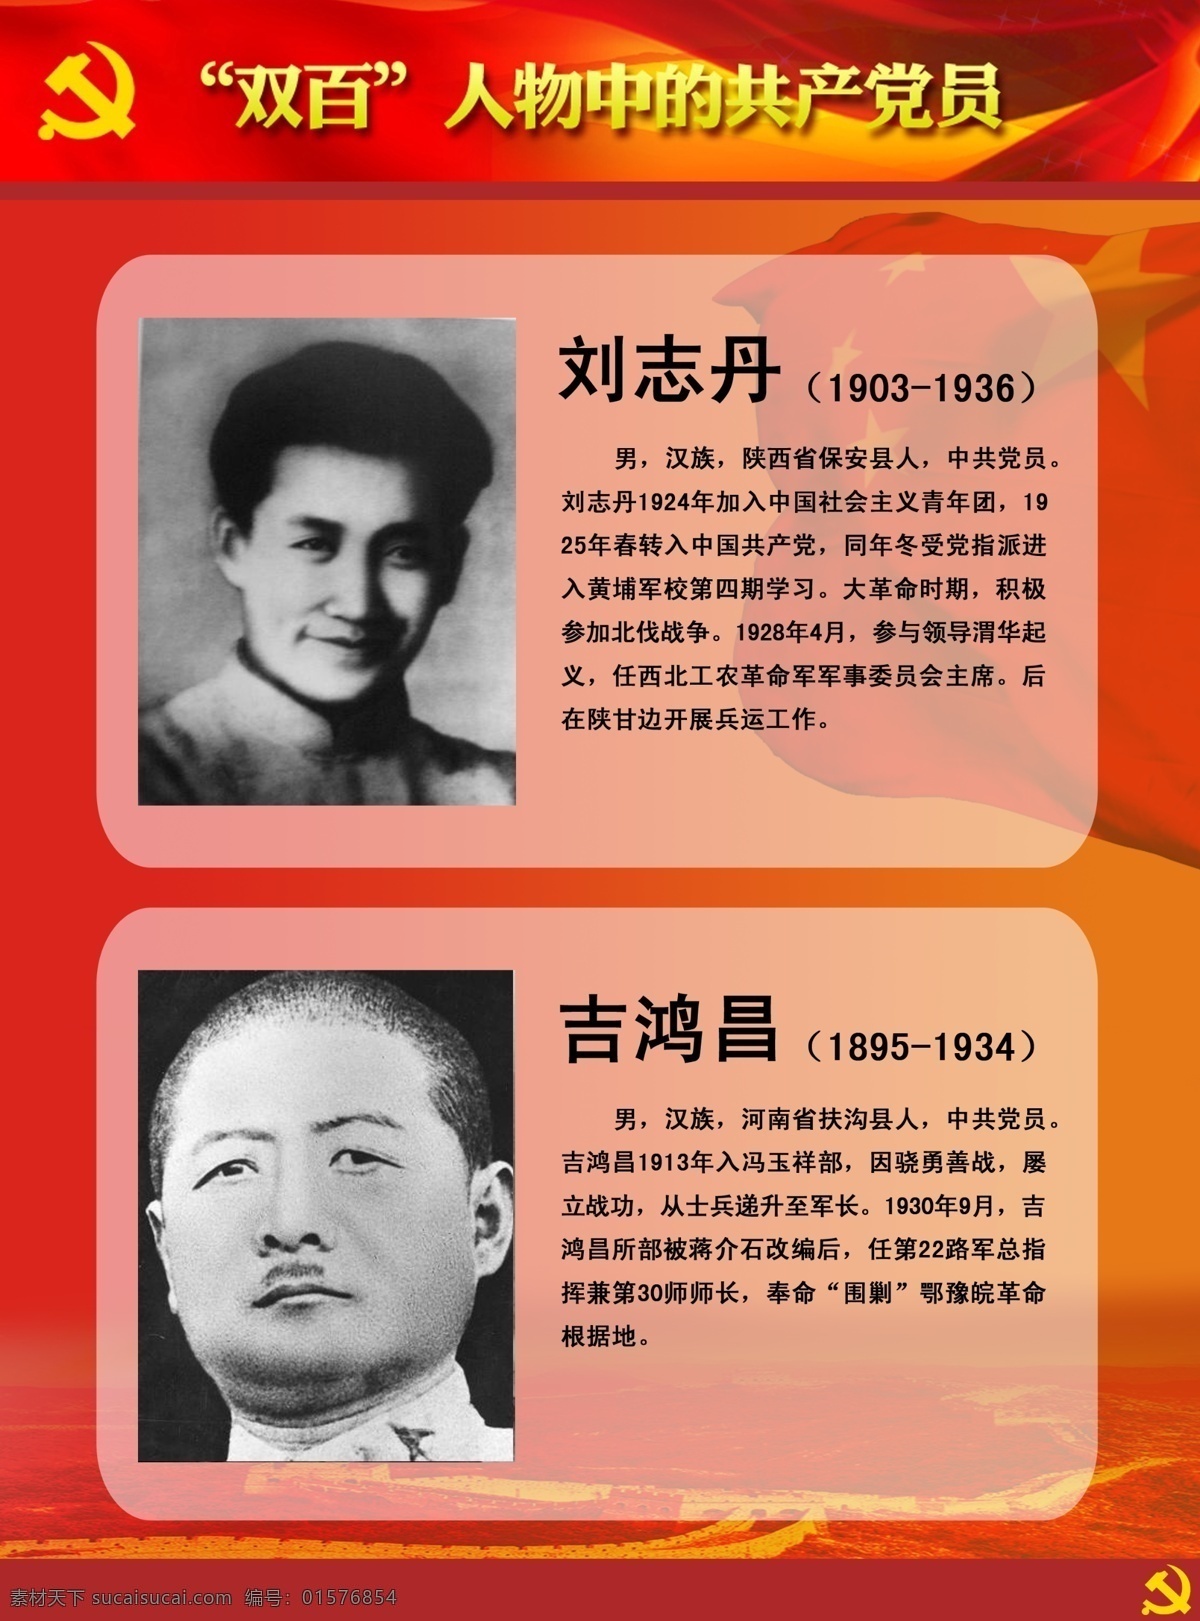 双百人物展板 双百 人物 中 共产党员 刘志丹 吉鸿昌 英雄人物 牺牲 英雄 展板模板 广告设计模板 源文件